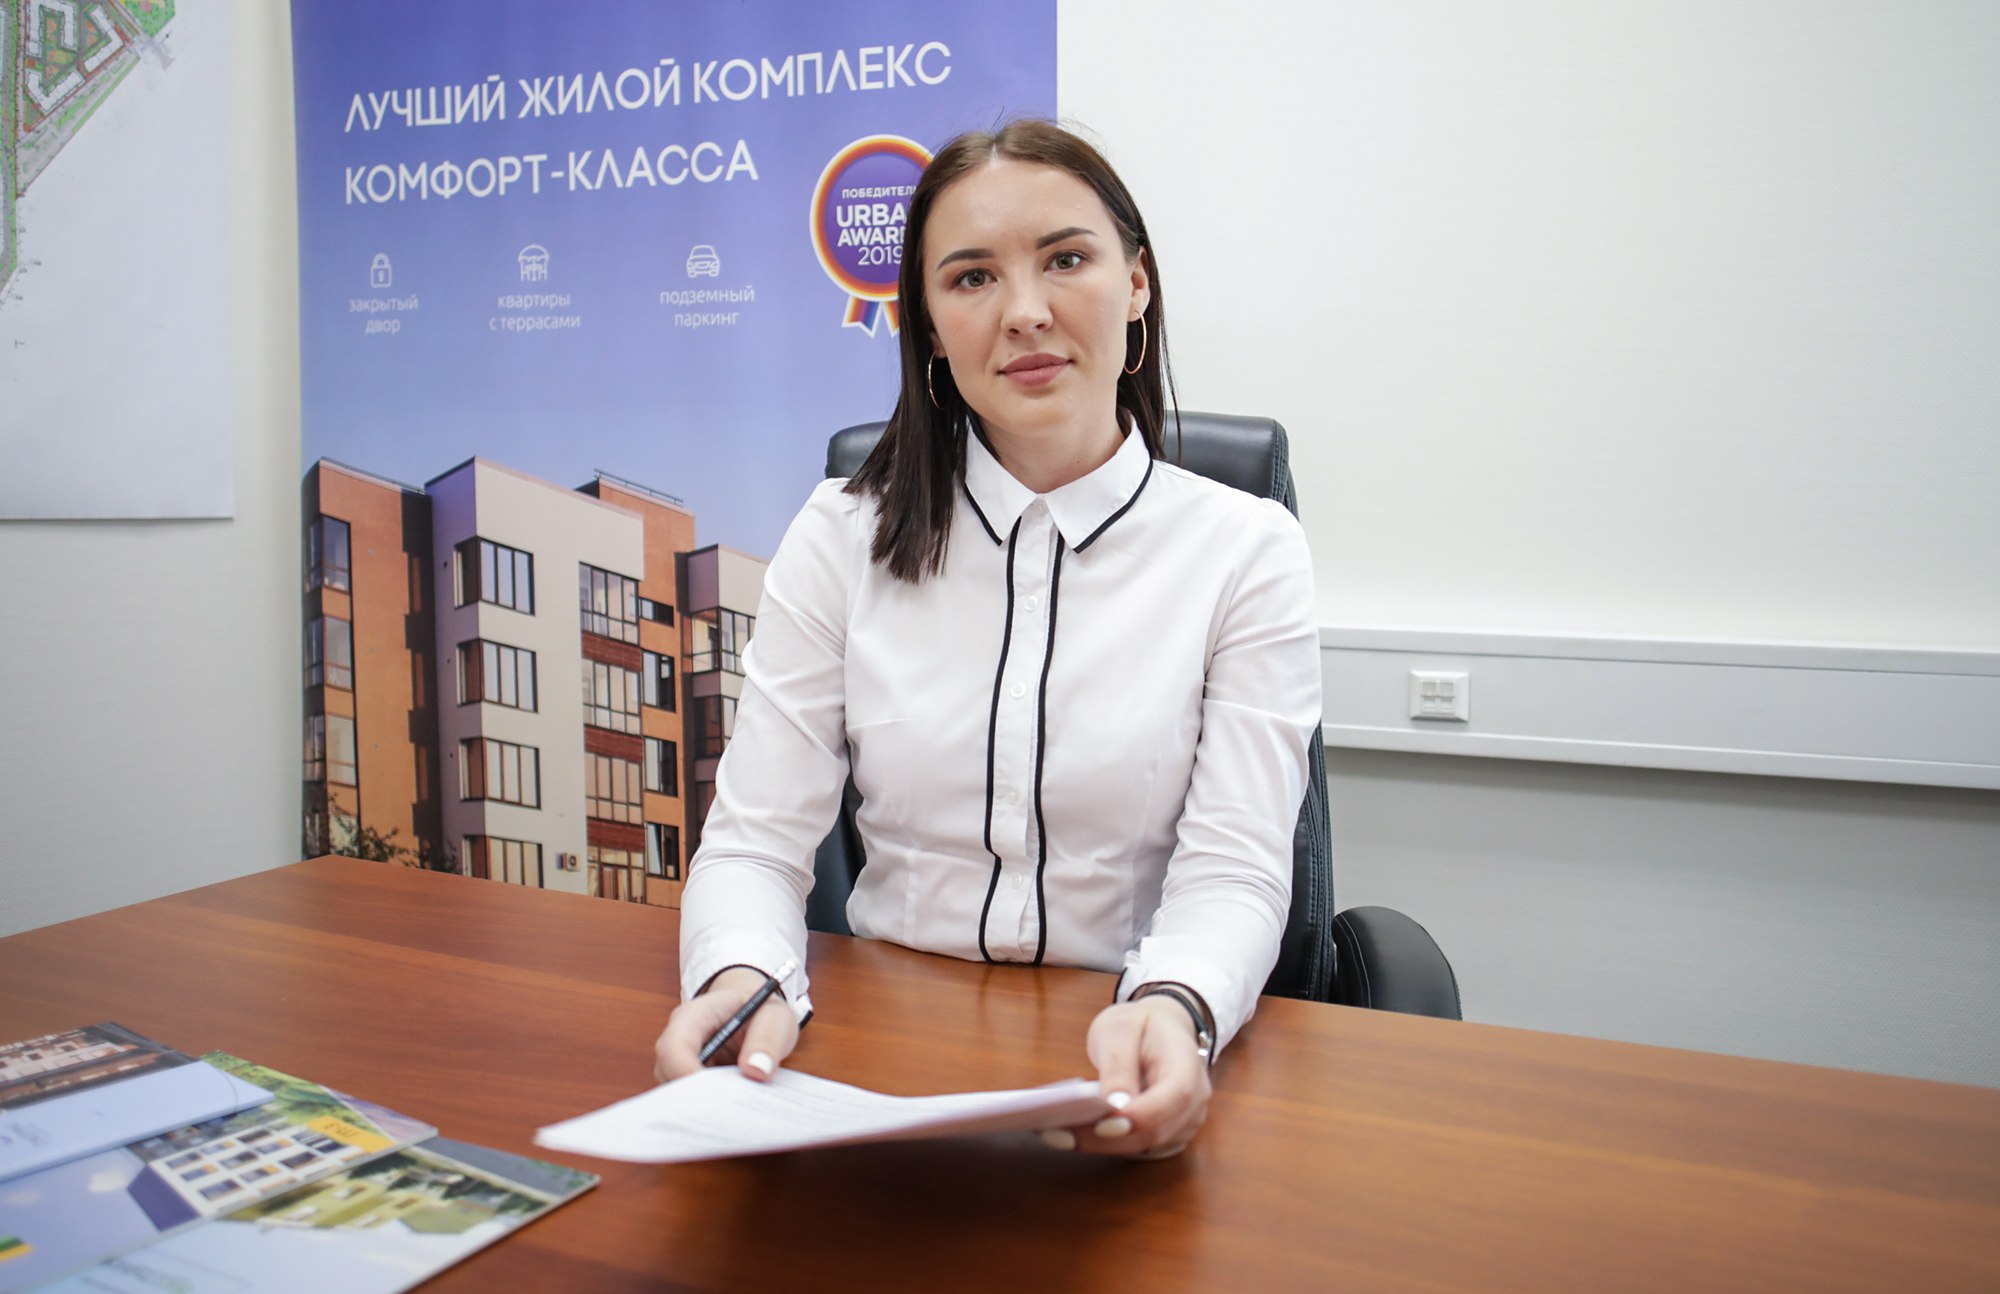 Юлия Шамшурина, руководитель отдела маркетинга компании «Партнер»
